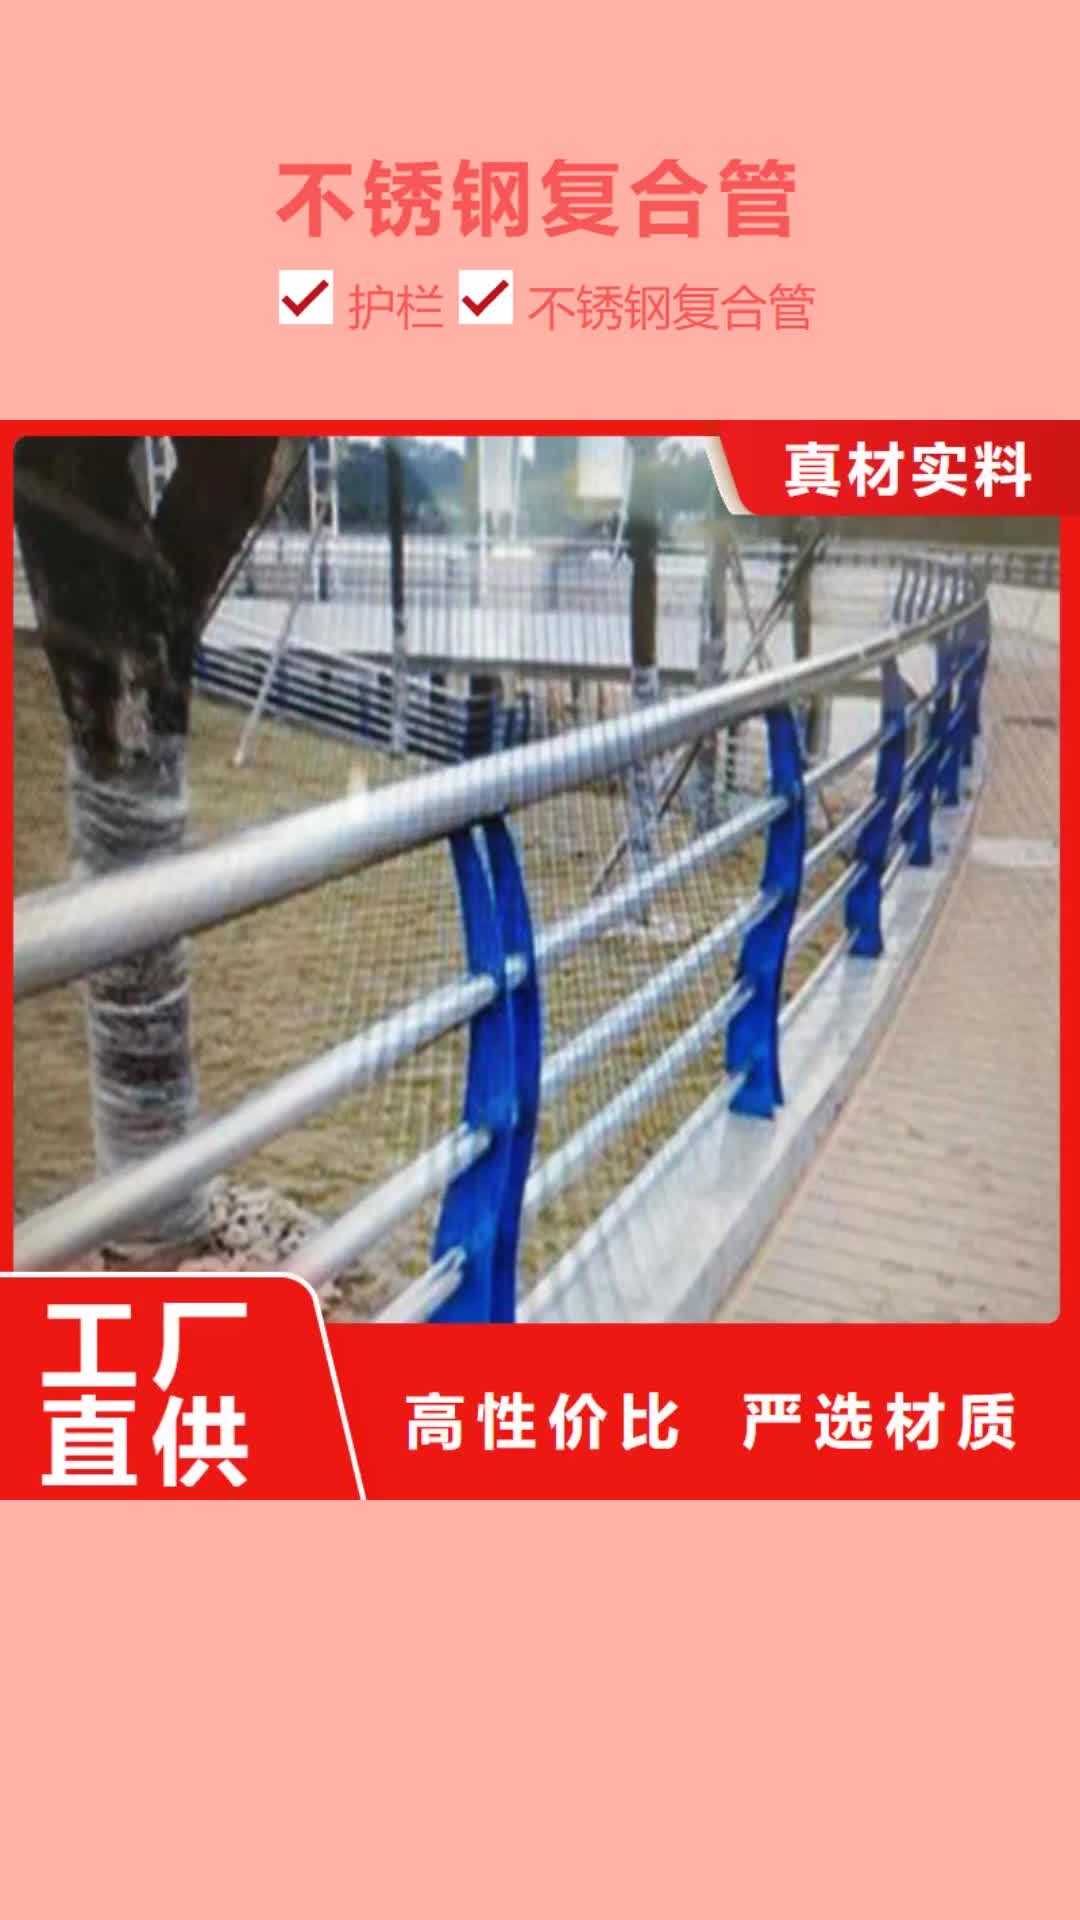 永州 不锈钢复合管,【
不锈钢护栏】安装简单